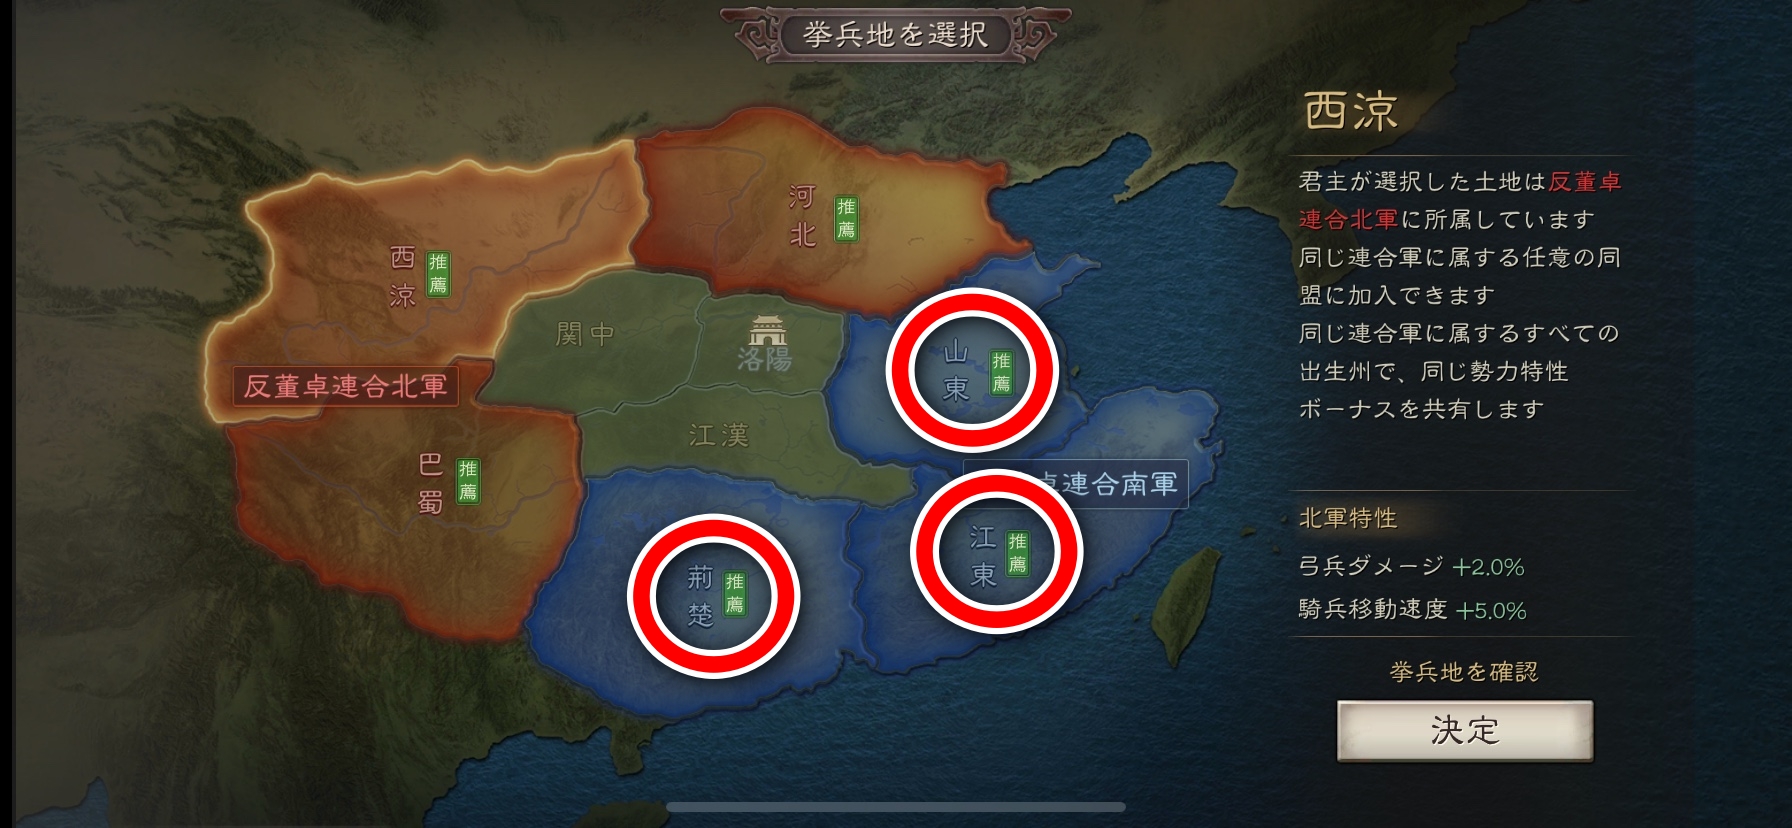 三国志 真戦 挙兵地選択画面